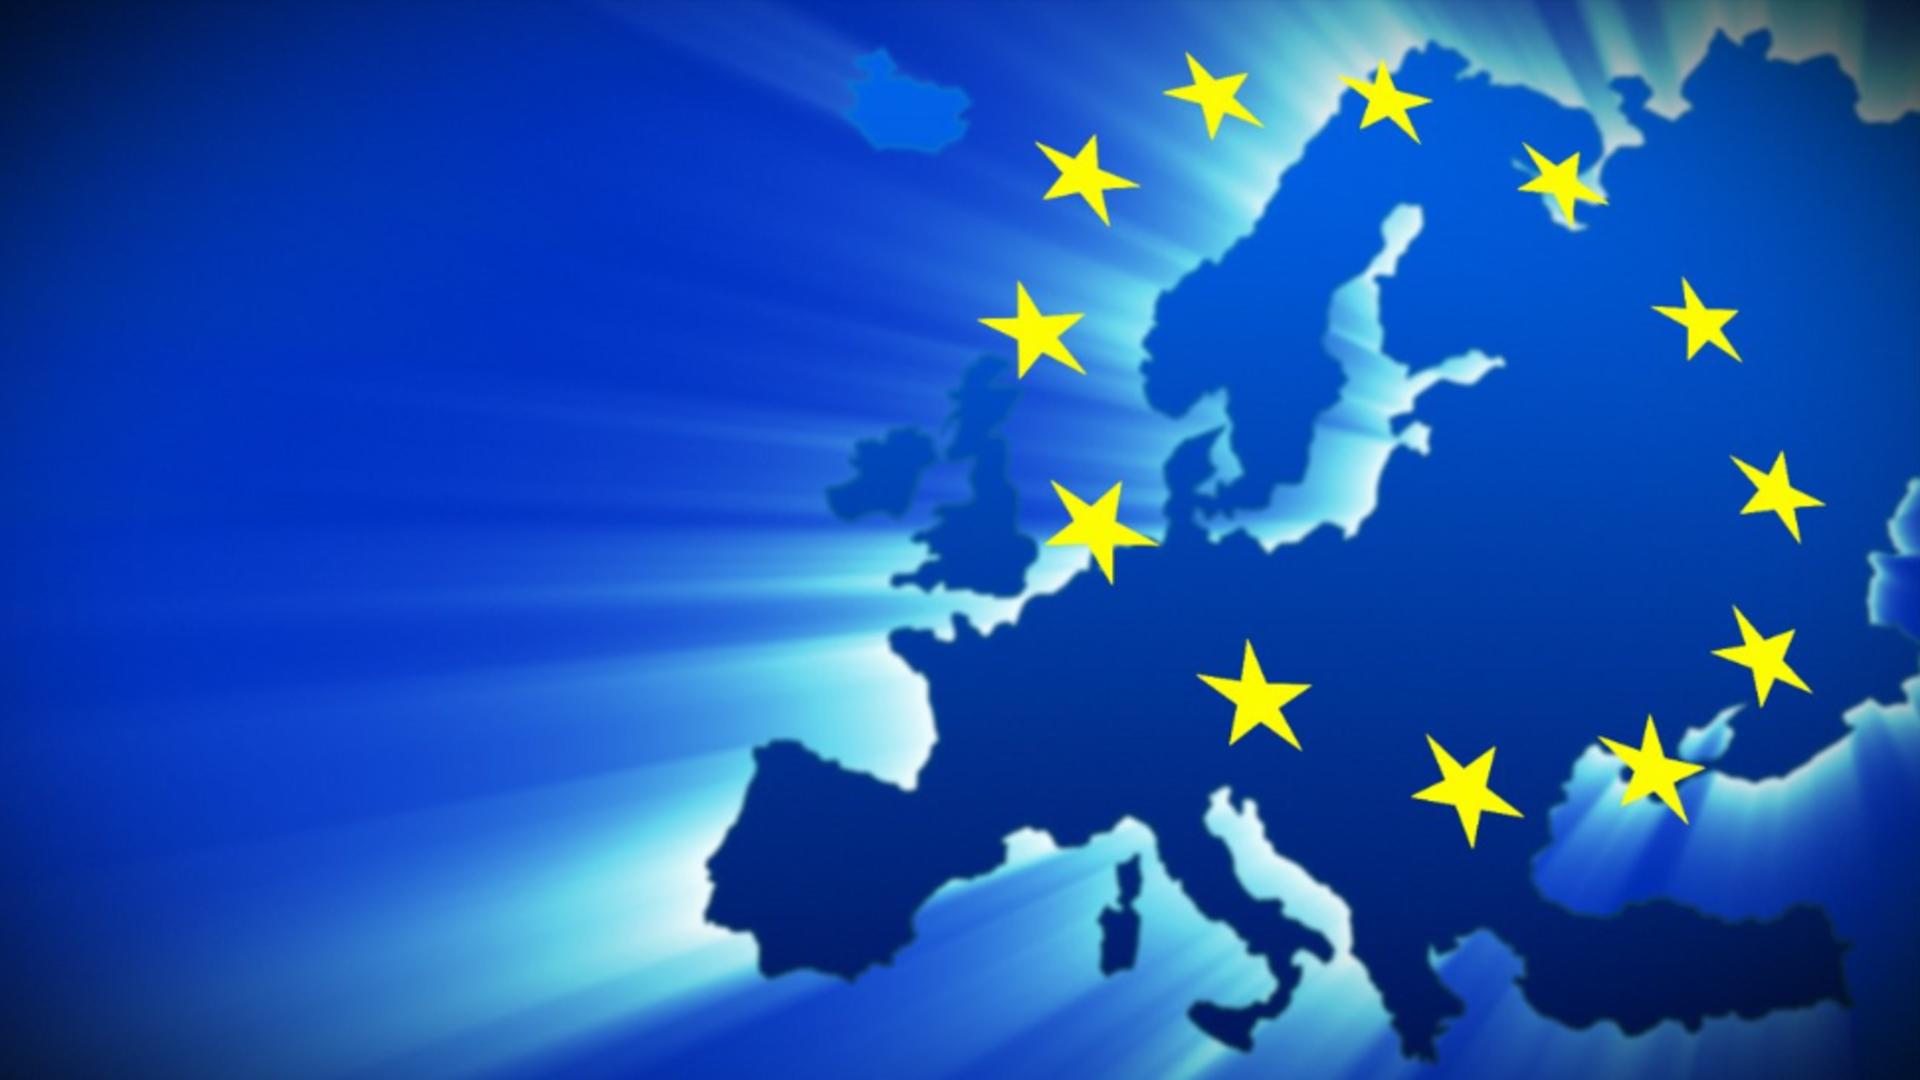 Dreptul la avort în UE, inclus în Carta drepturilor fundamentale - Rezoluția de la Bruxelles 